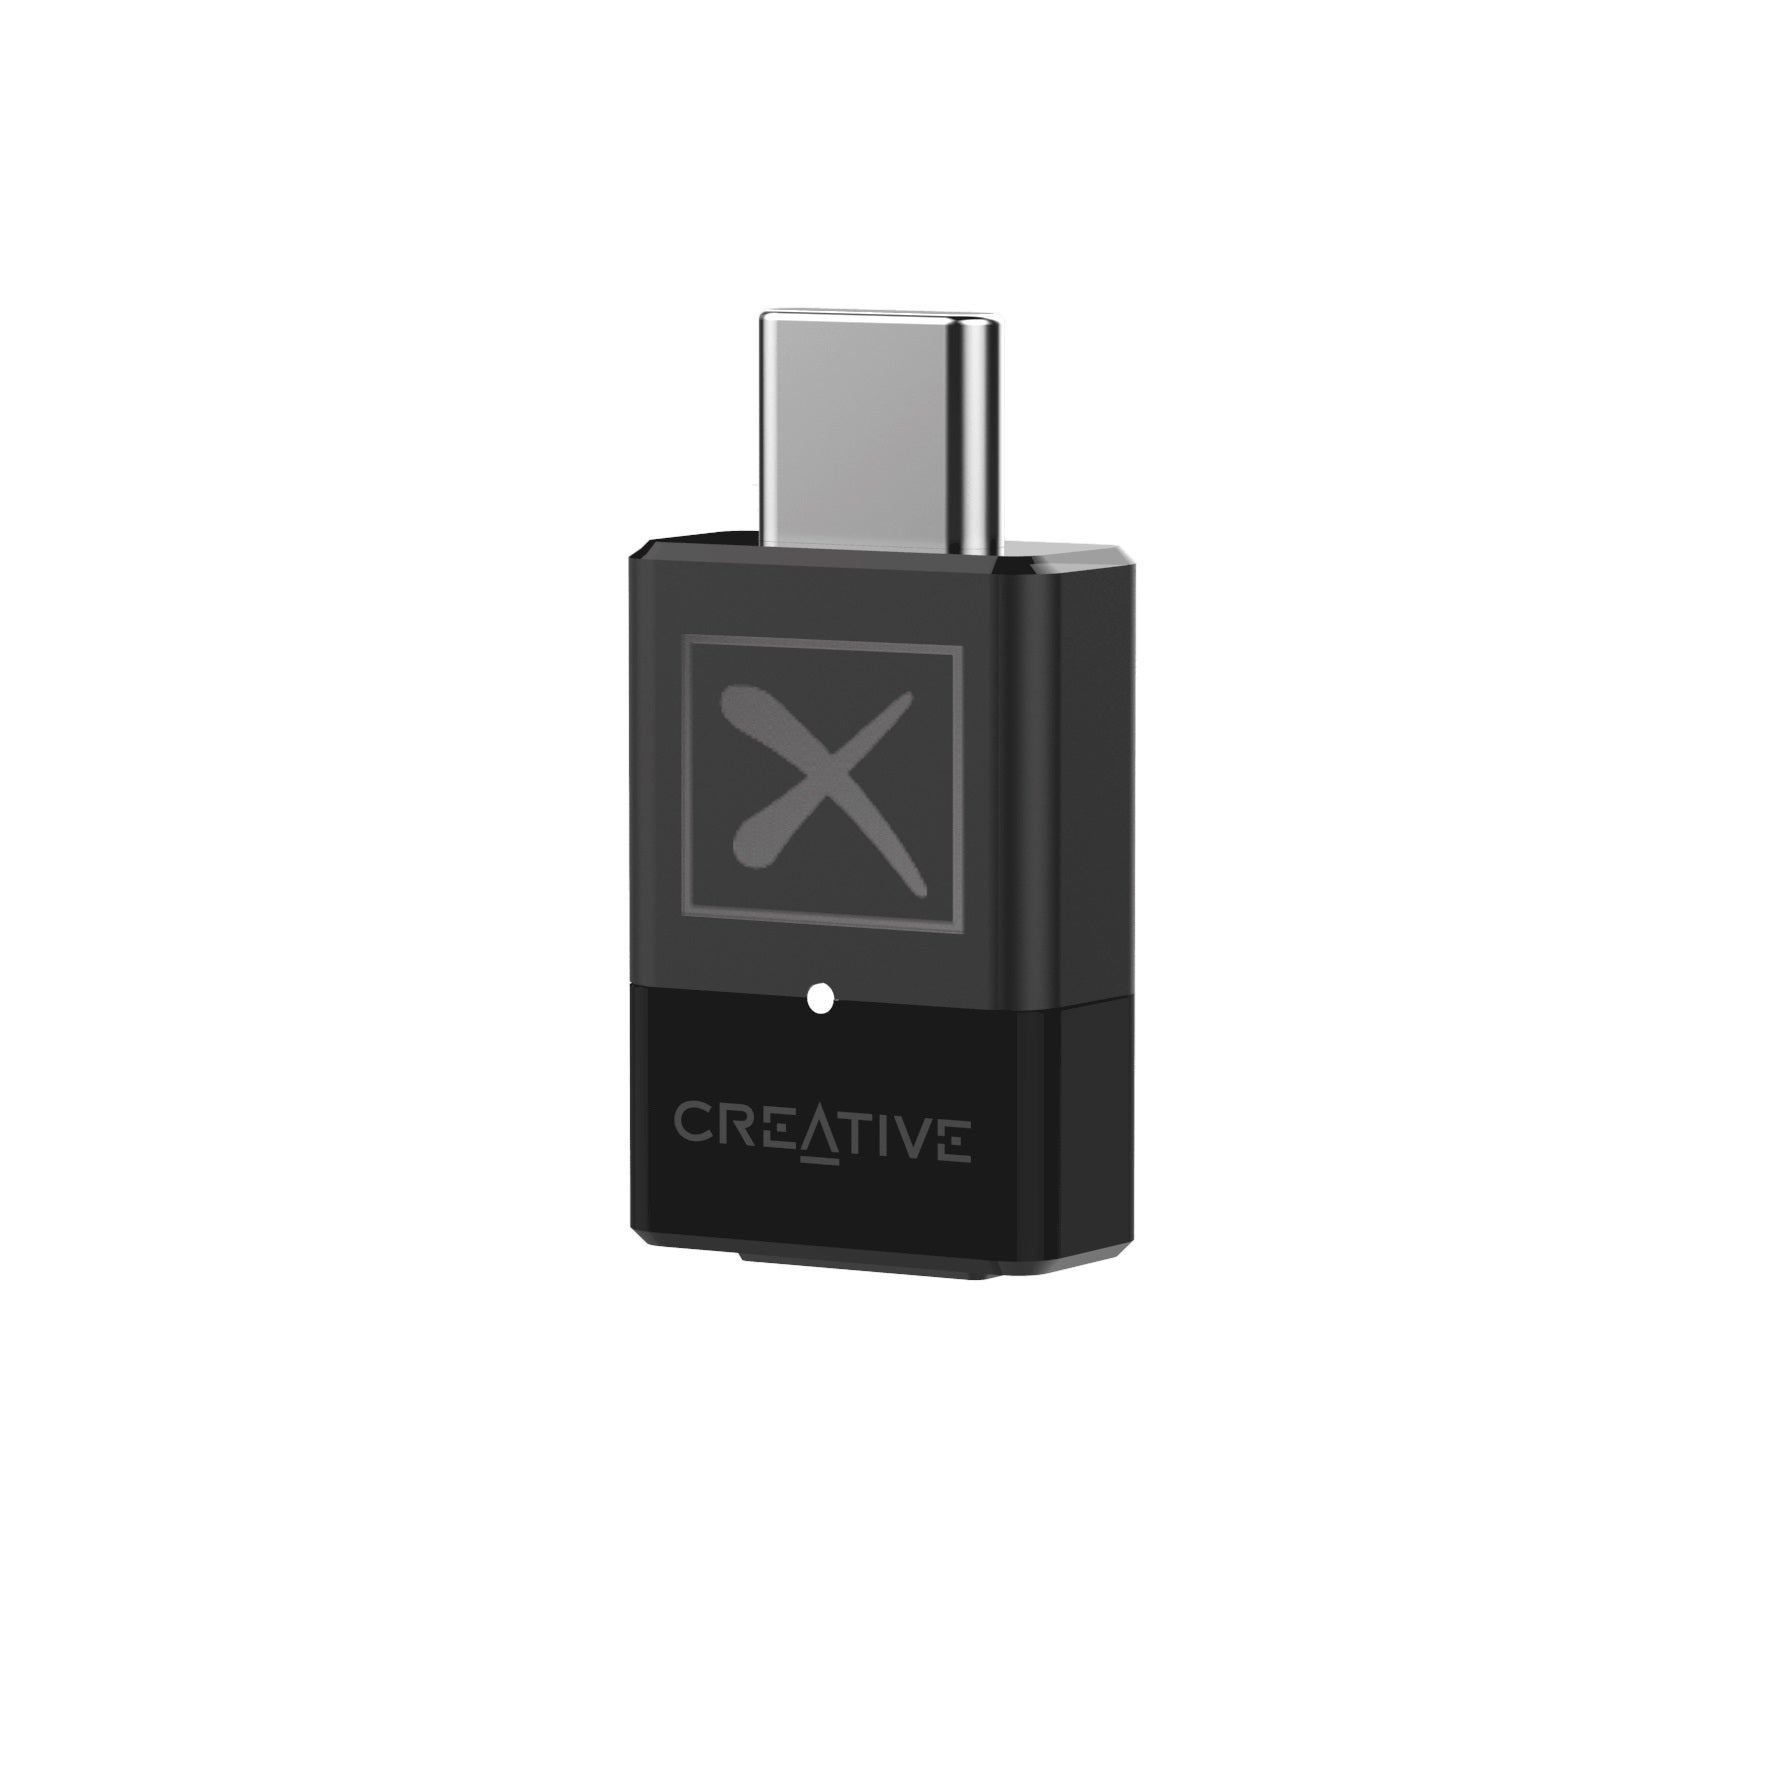 Immagine di Creative lancia l'adattatore Bluetooth BT-W4: semplice e versatile e compatibile con aptX Adaptive